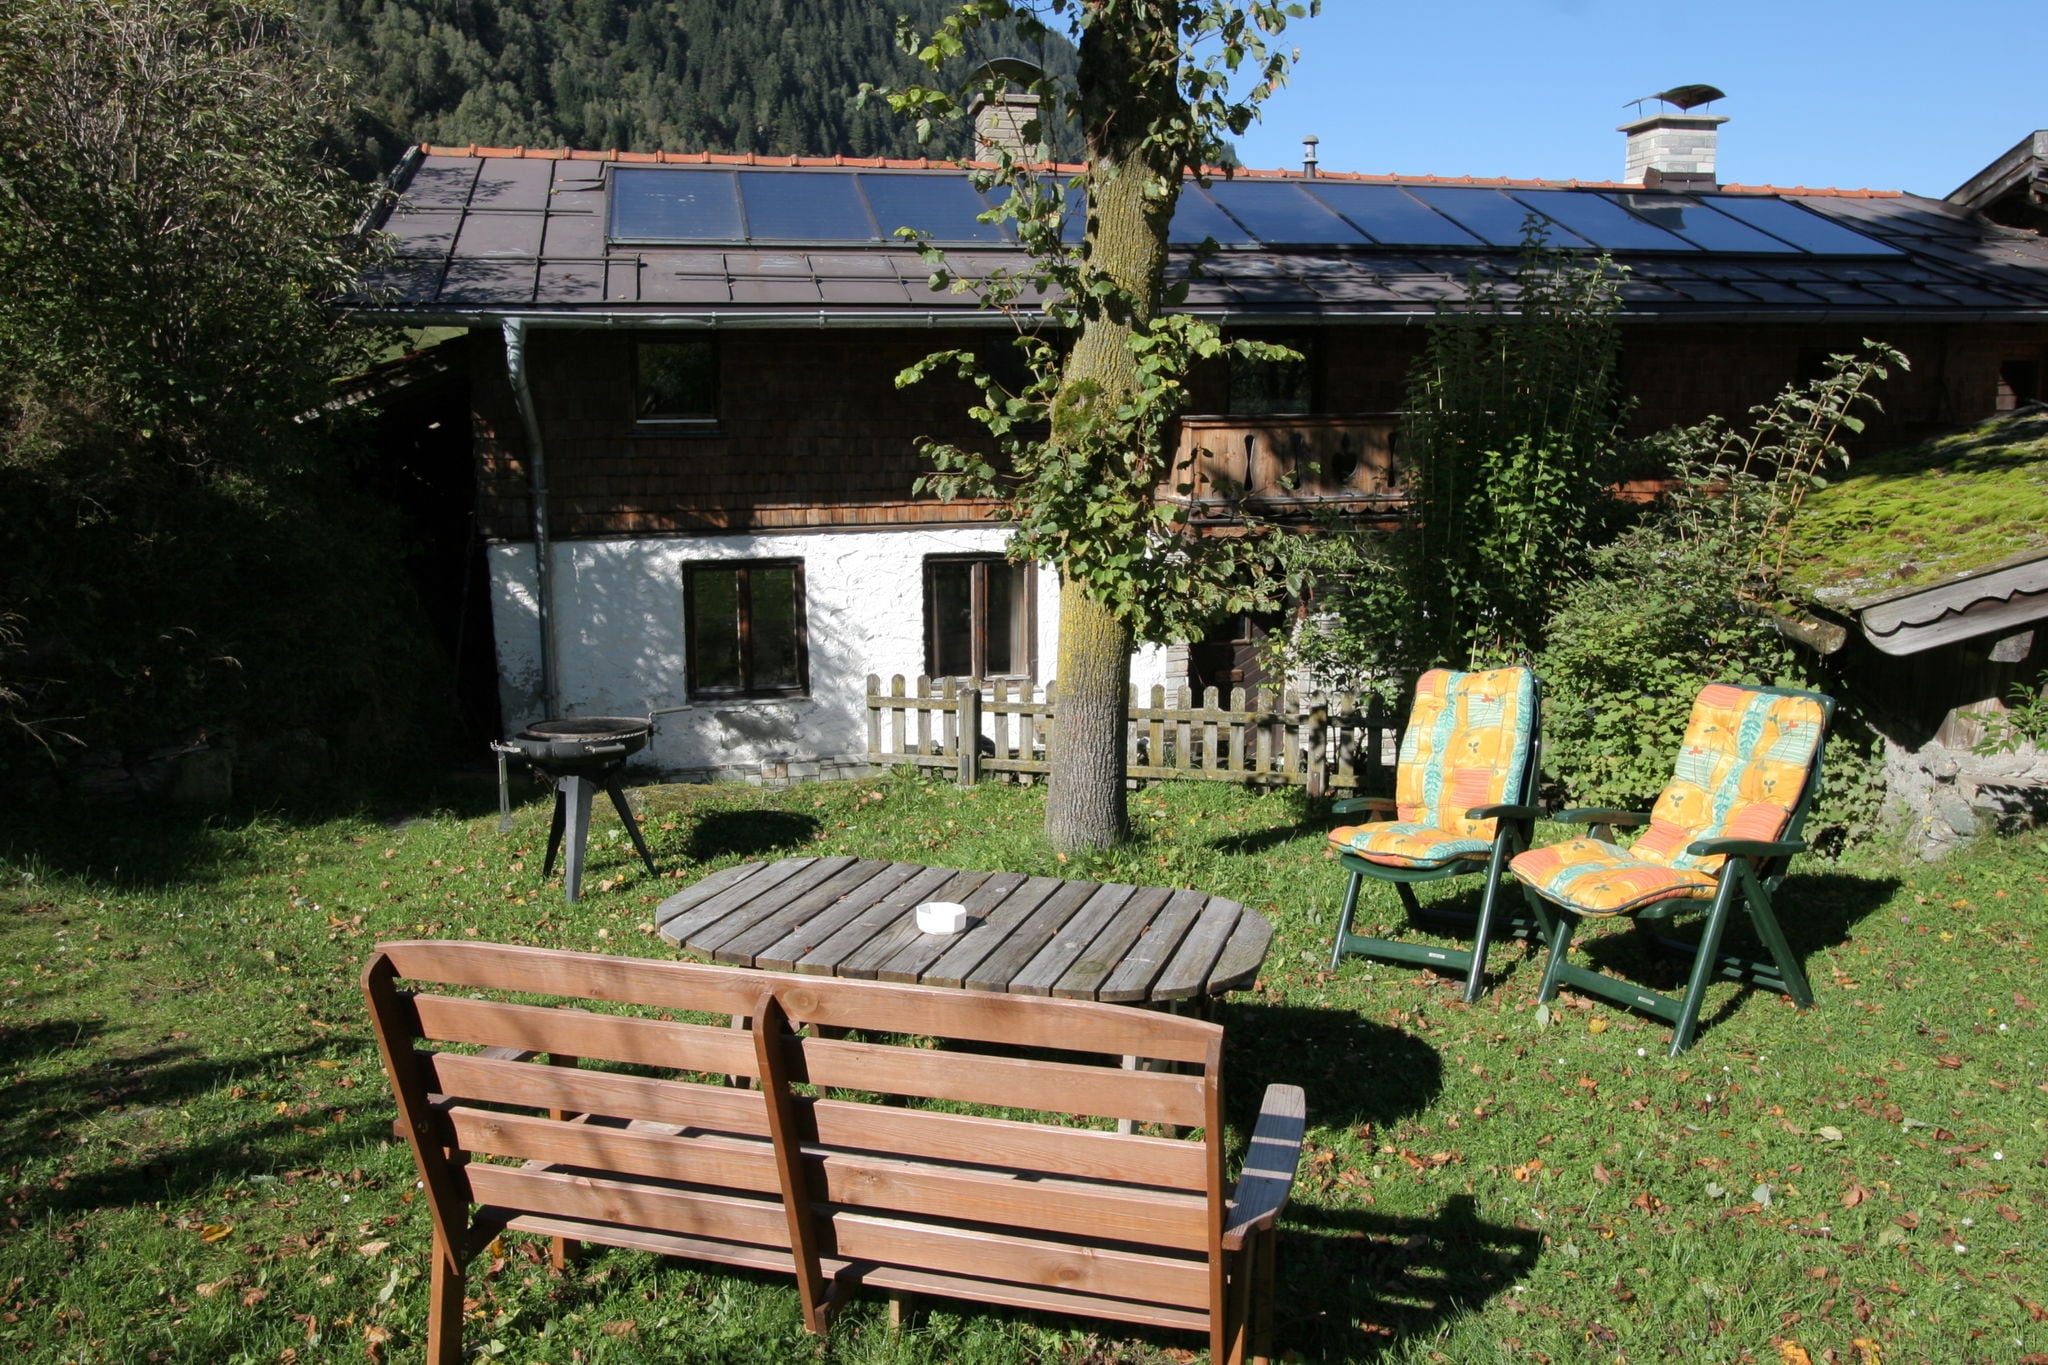 Rustig gelegen vakantiehuis in Salzburgerland in de bergen